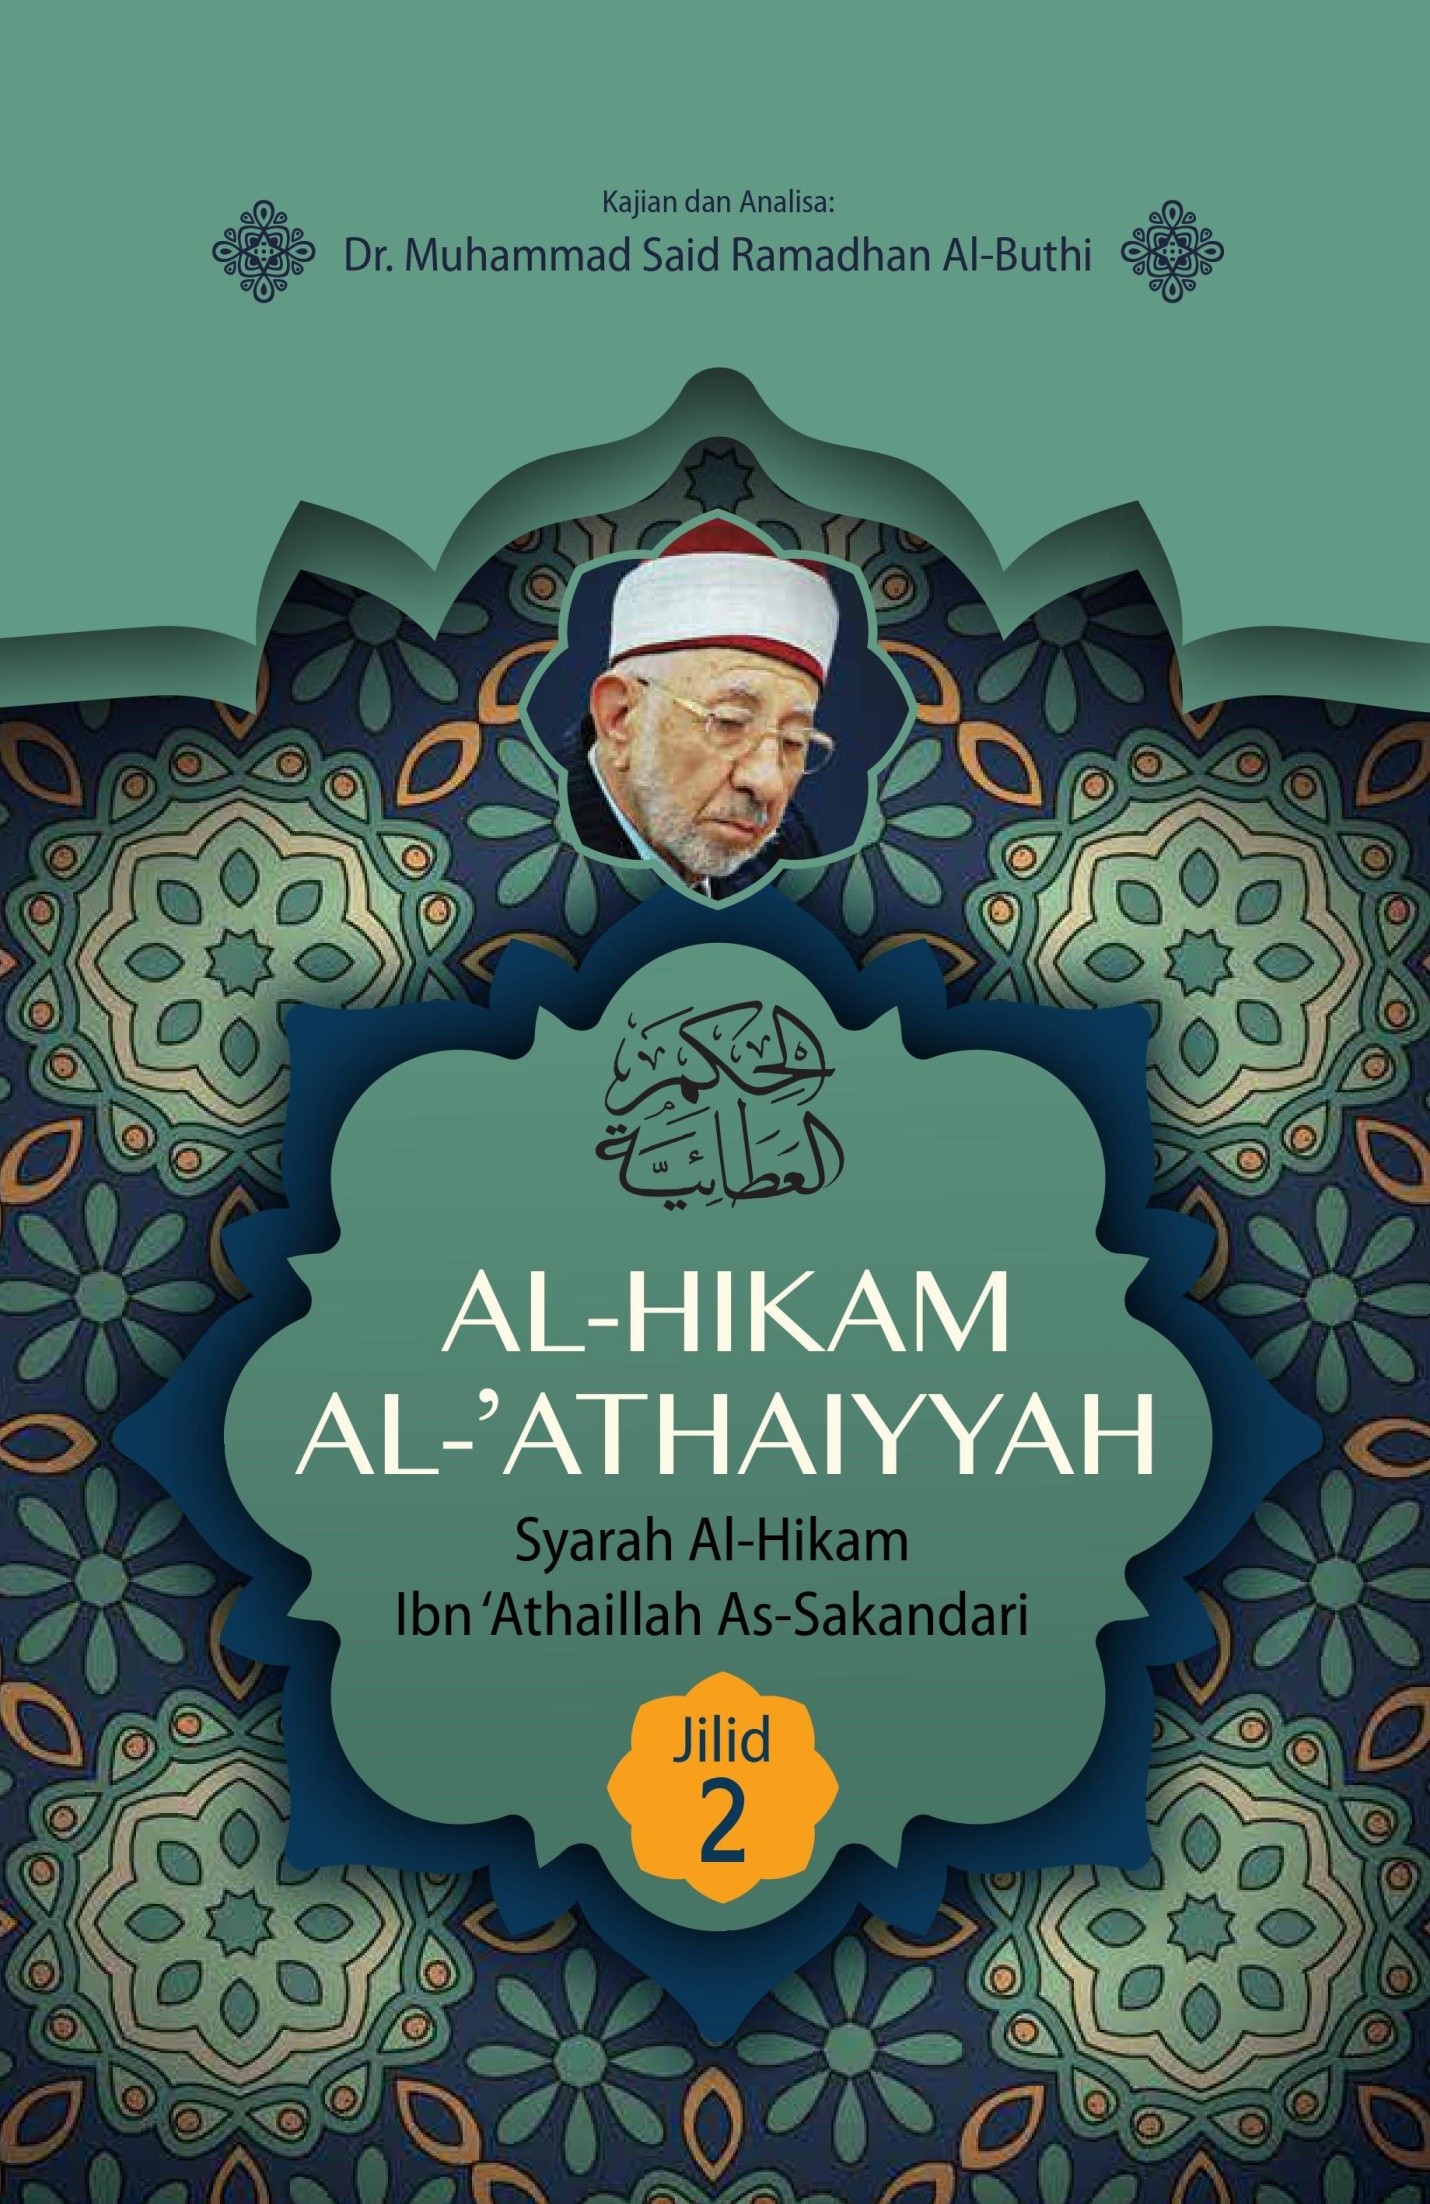 AL-HIKAM AL-ATHAIYYAH JILID 2